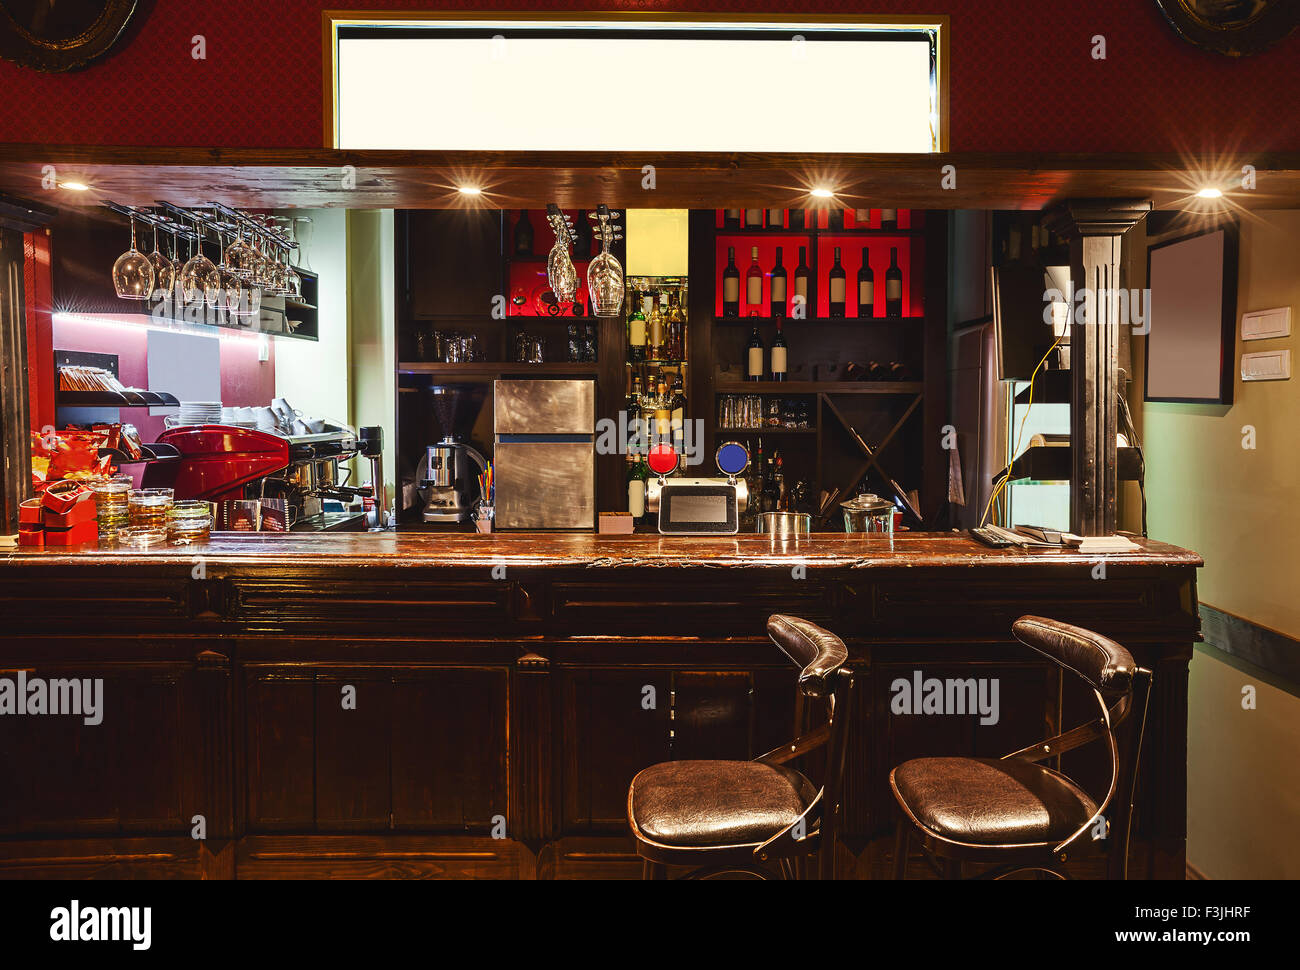 Intérieur d'un café moderne de style rétro, scène de nuit. L'éclairage, le mobilier et les détails architecturaux. Banque D'Images